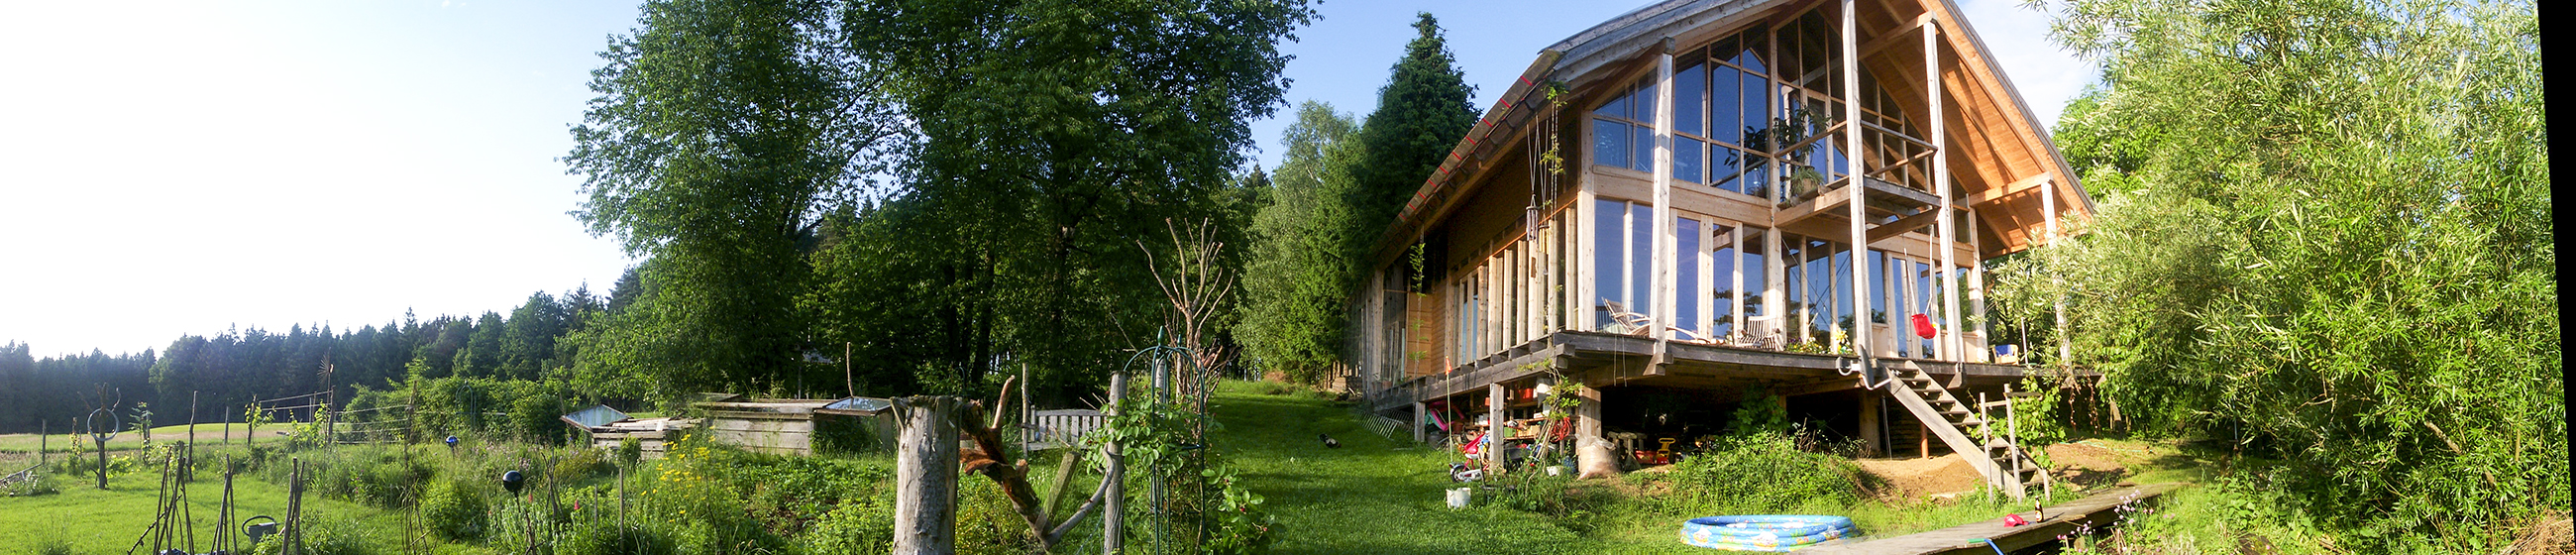 Holzskeletthaus zur Zeit der Weinrebenpflanzung